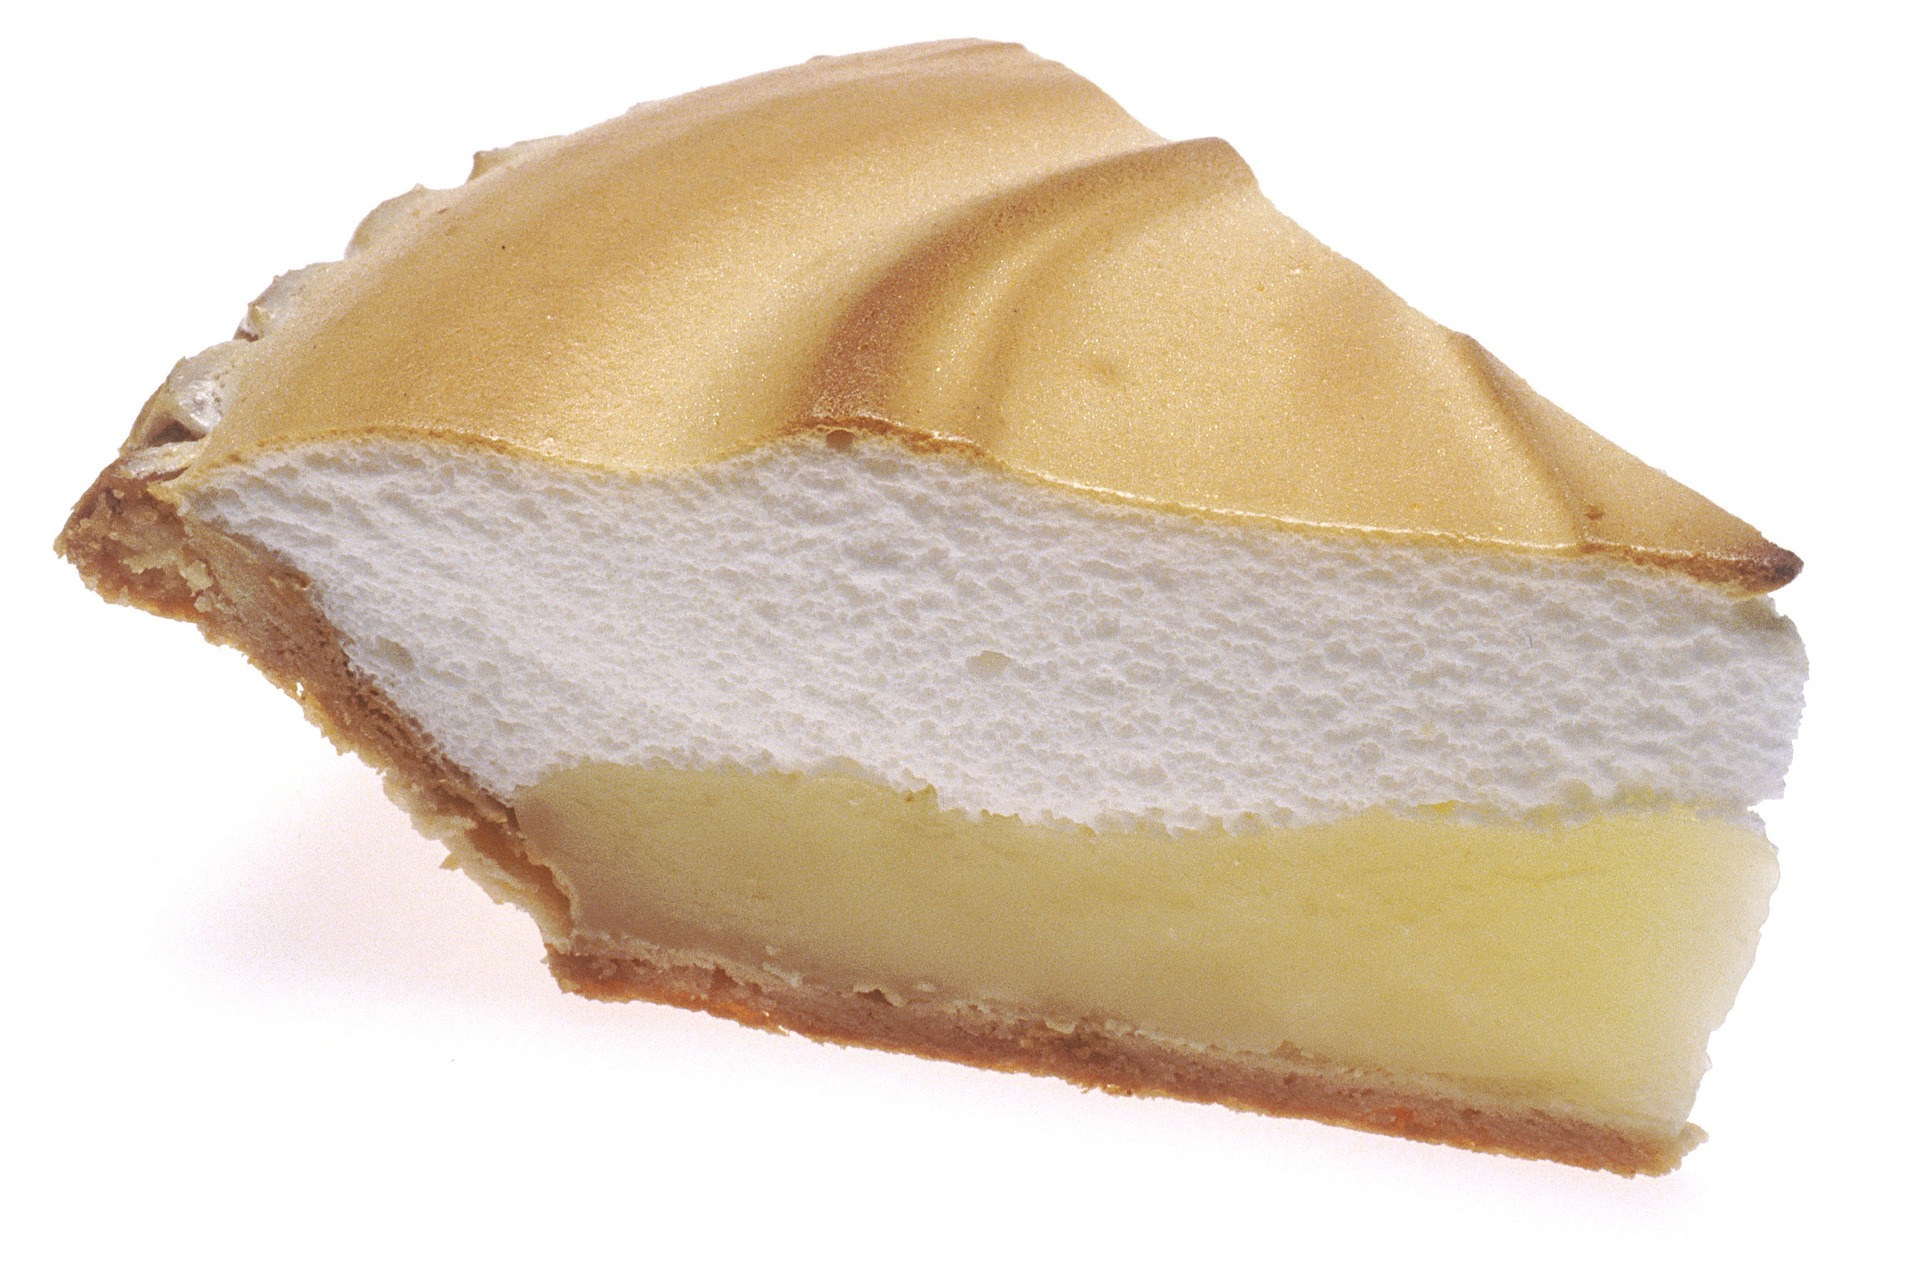 https://pixabay.com/en/lemon-meringue-pie-slice-food-992763/